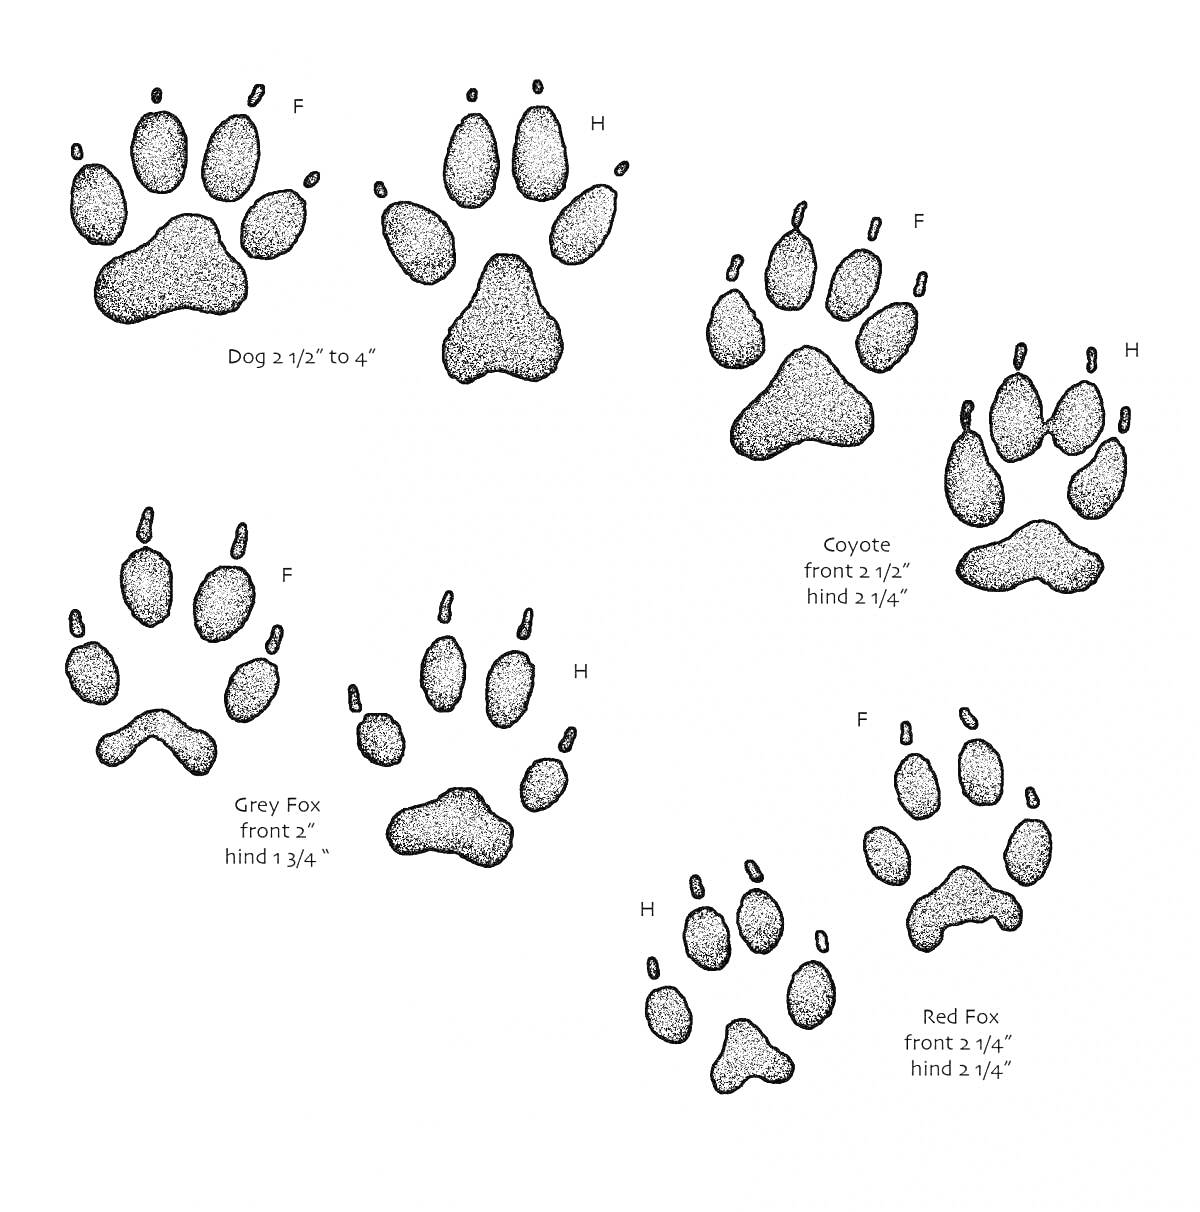 Отпечатки лап: собаки, койота, серой лисы и красной лисы